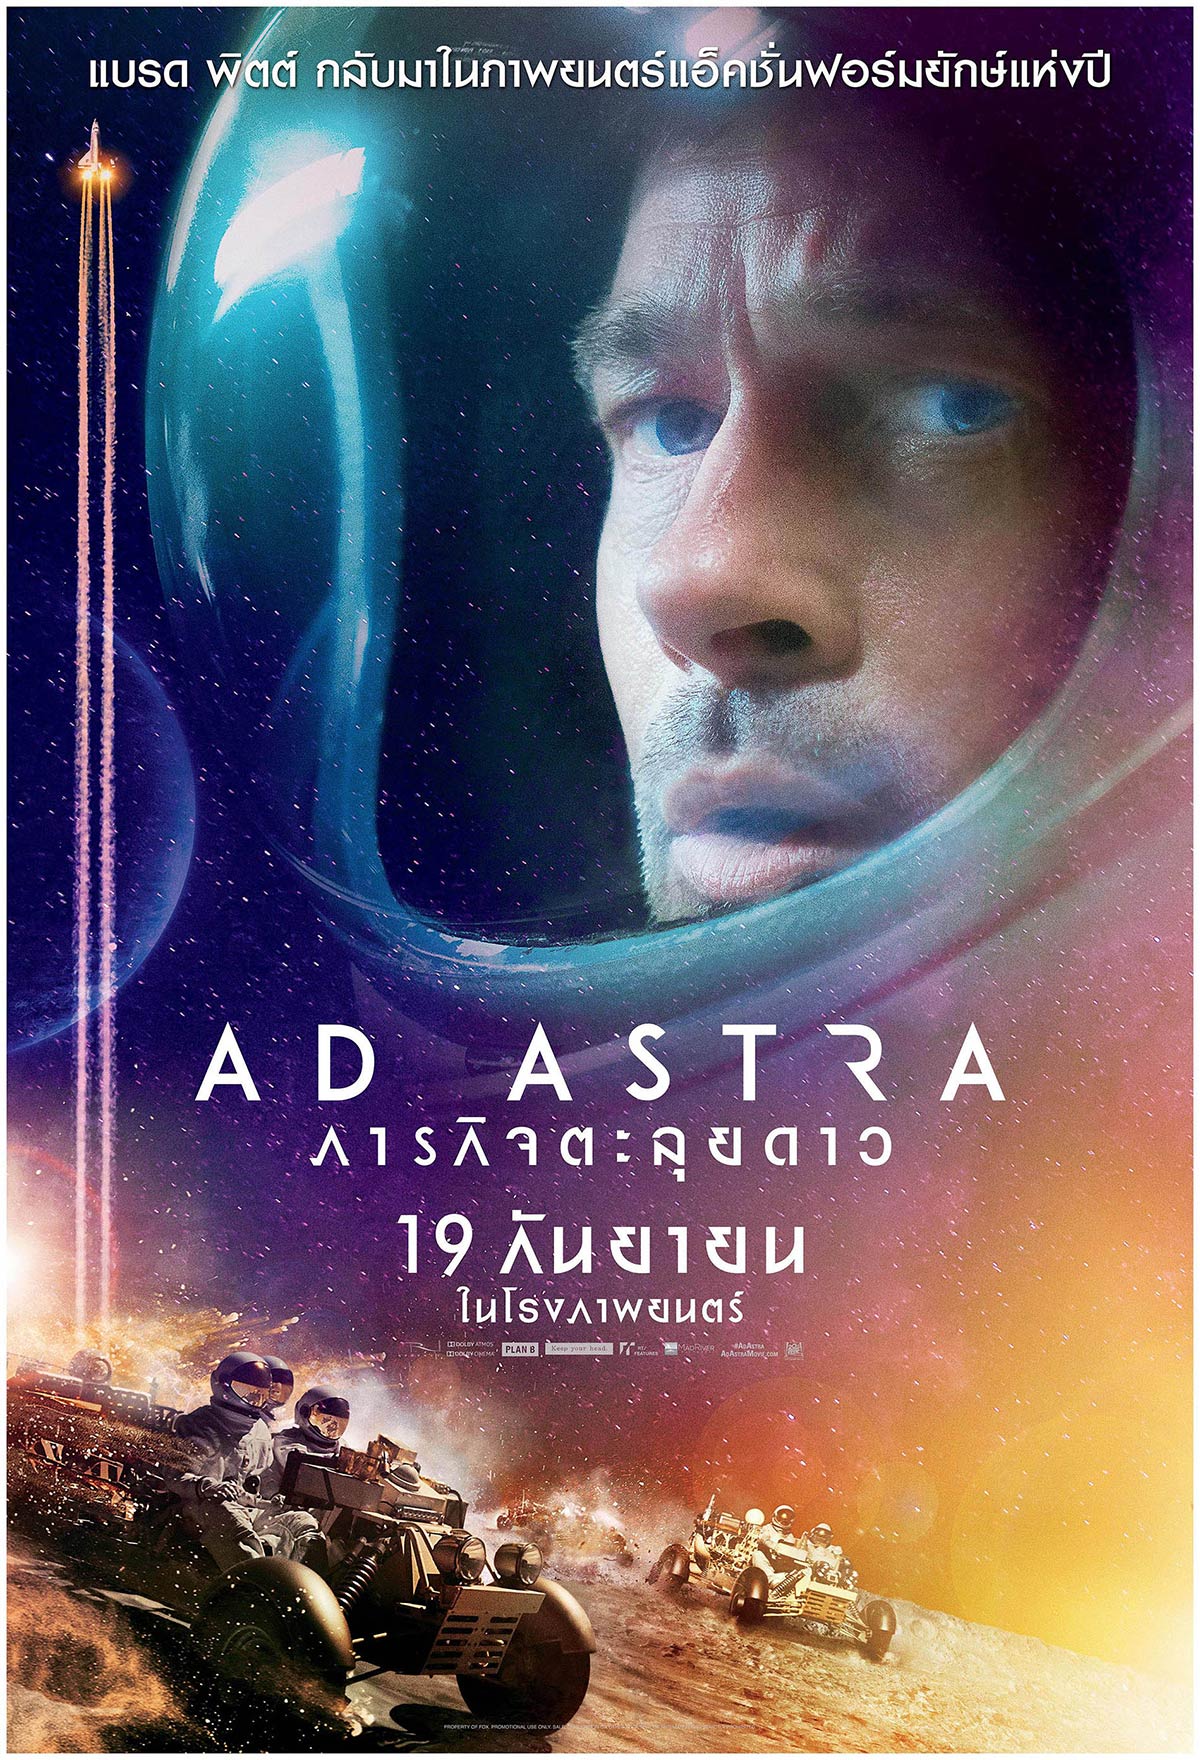 Ad Astra 2019 ภารกิจตะลุยดาว ดูฟรี ไม่มีโฆษณา เต็มเรื่อง พากย์ไทย ดูหนังฟรี